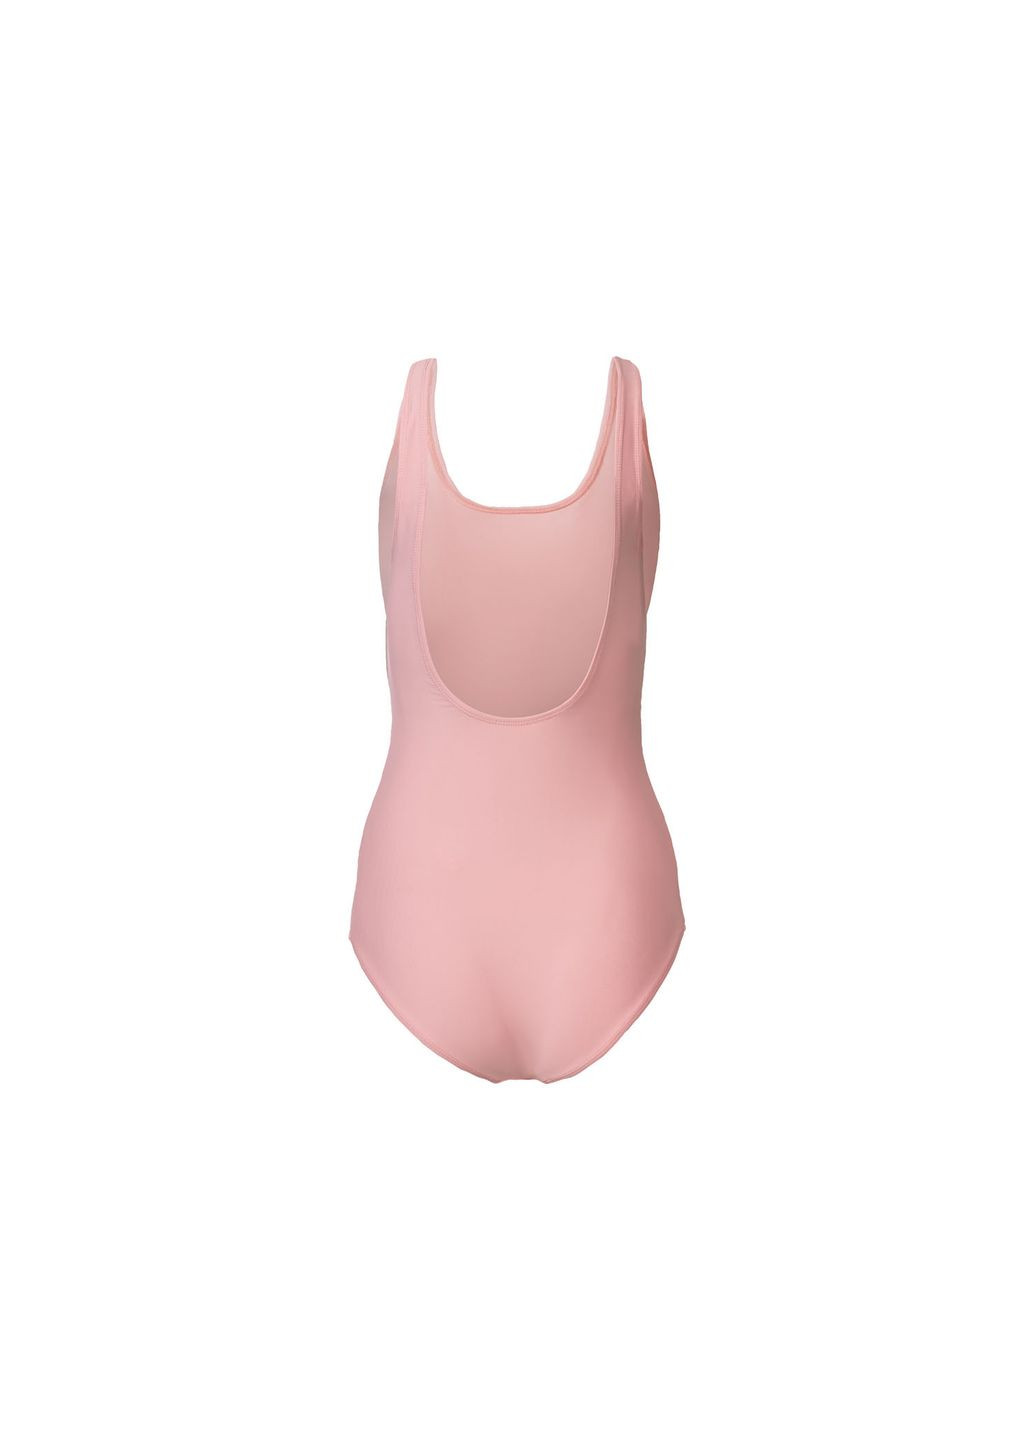 Рожевий купальник закритий на підкладці для жінки creora® 381383 38(s) рожевий бікіні Esmara